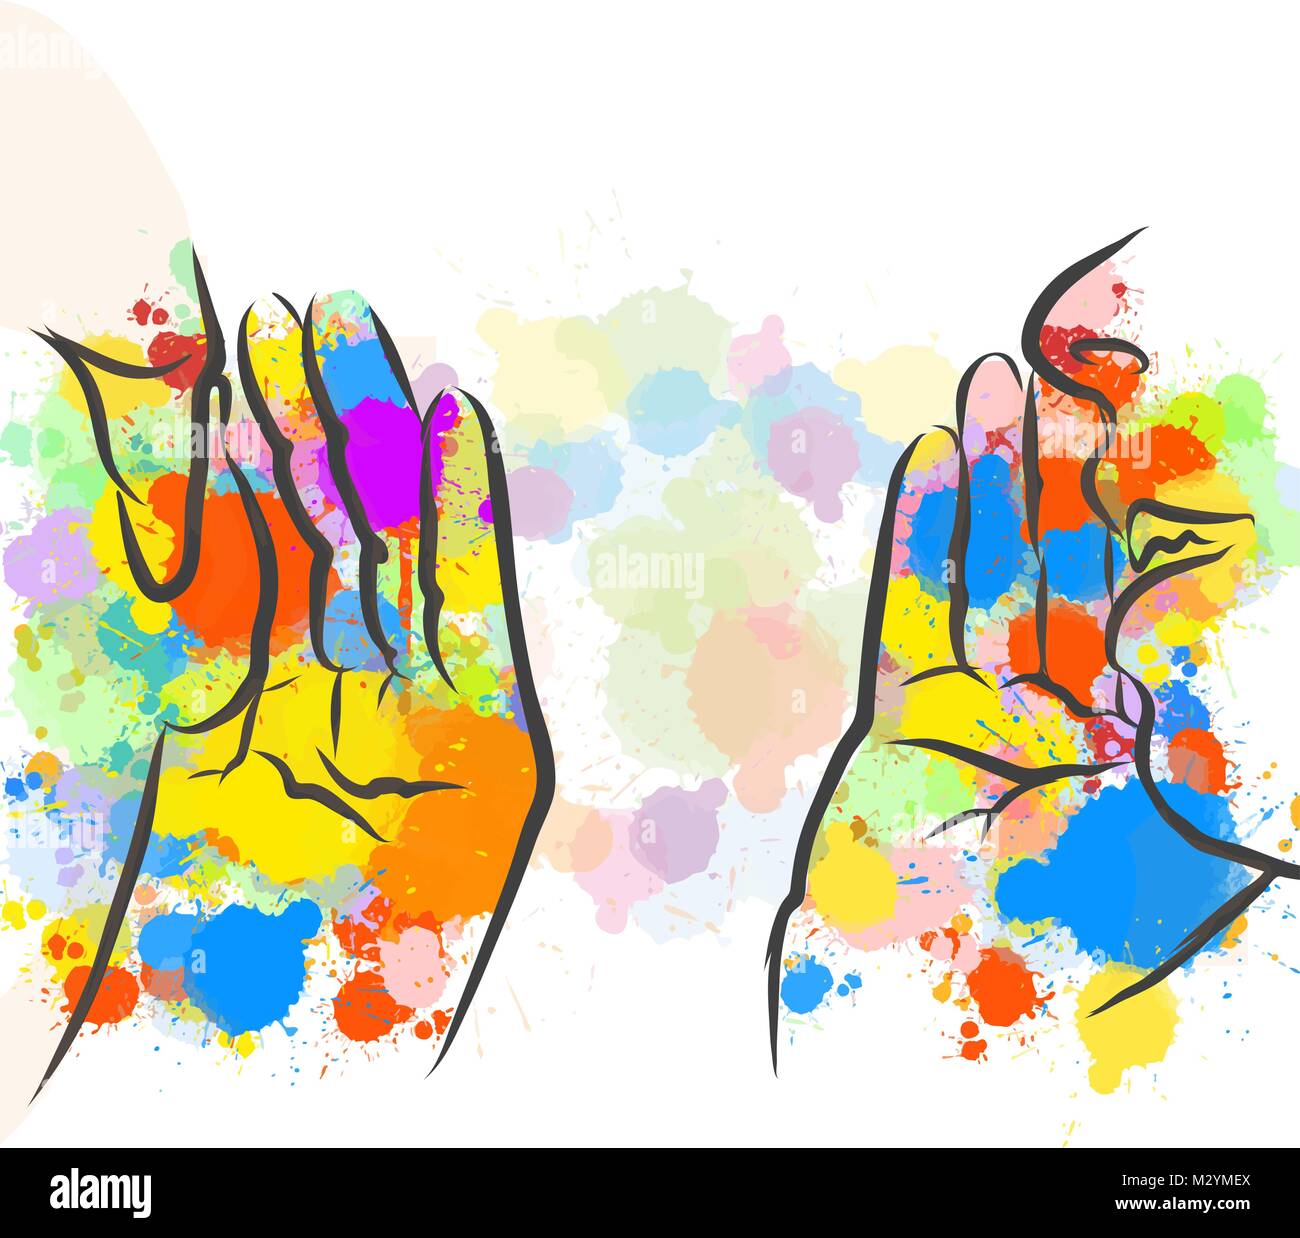 Bunte Klatsch Hände Skizze. Hand gezeichnet Vector Illustration, Splatter Farbe isoliert auf weißem Hintergrund. Kreative Kommunikation Konzept. Stock Vektor